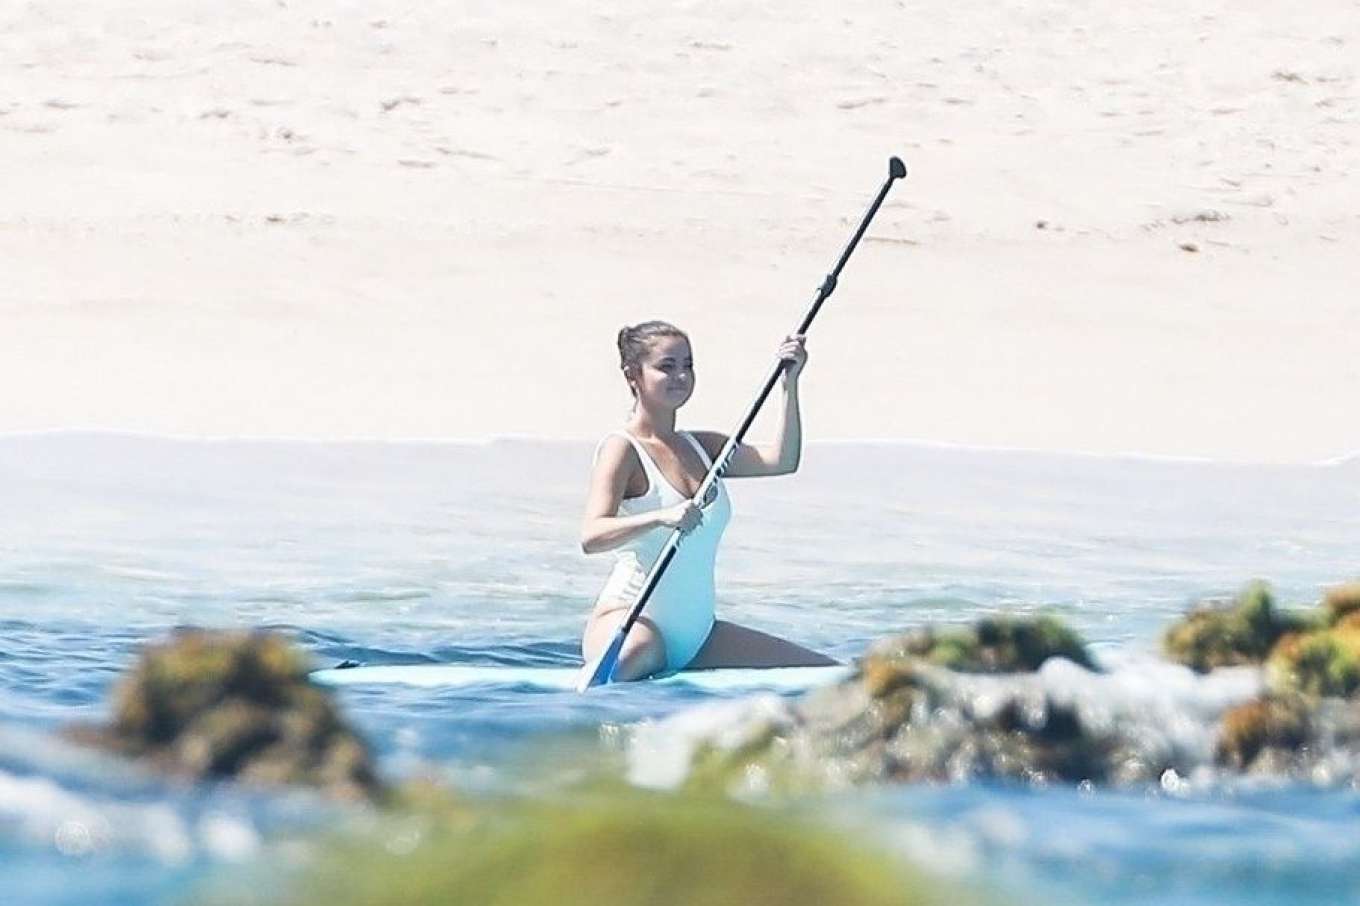 Selena Gomez 2019 : Selena Gomez in White Swimsuit Paddleboarding-30